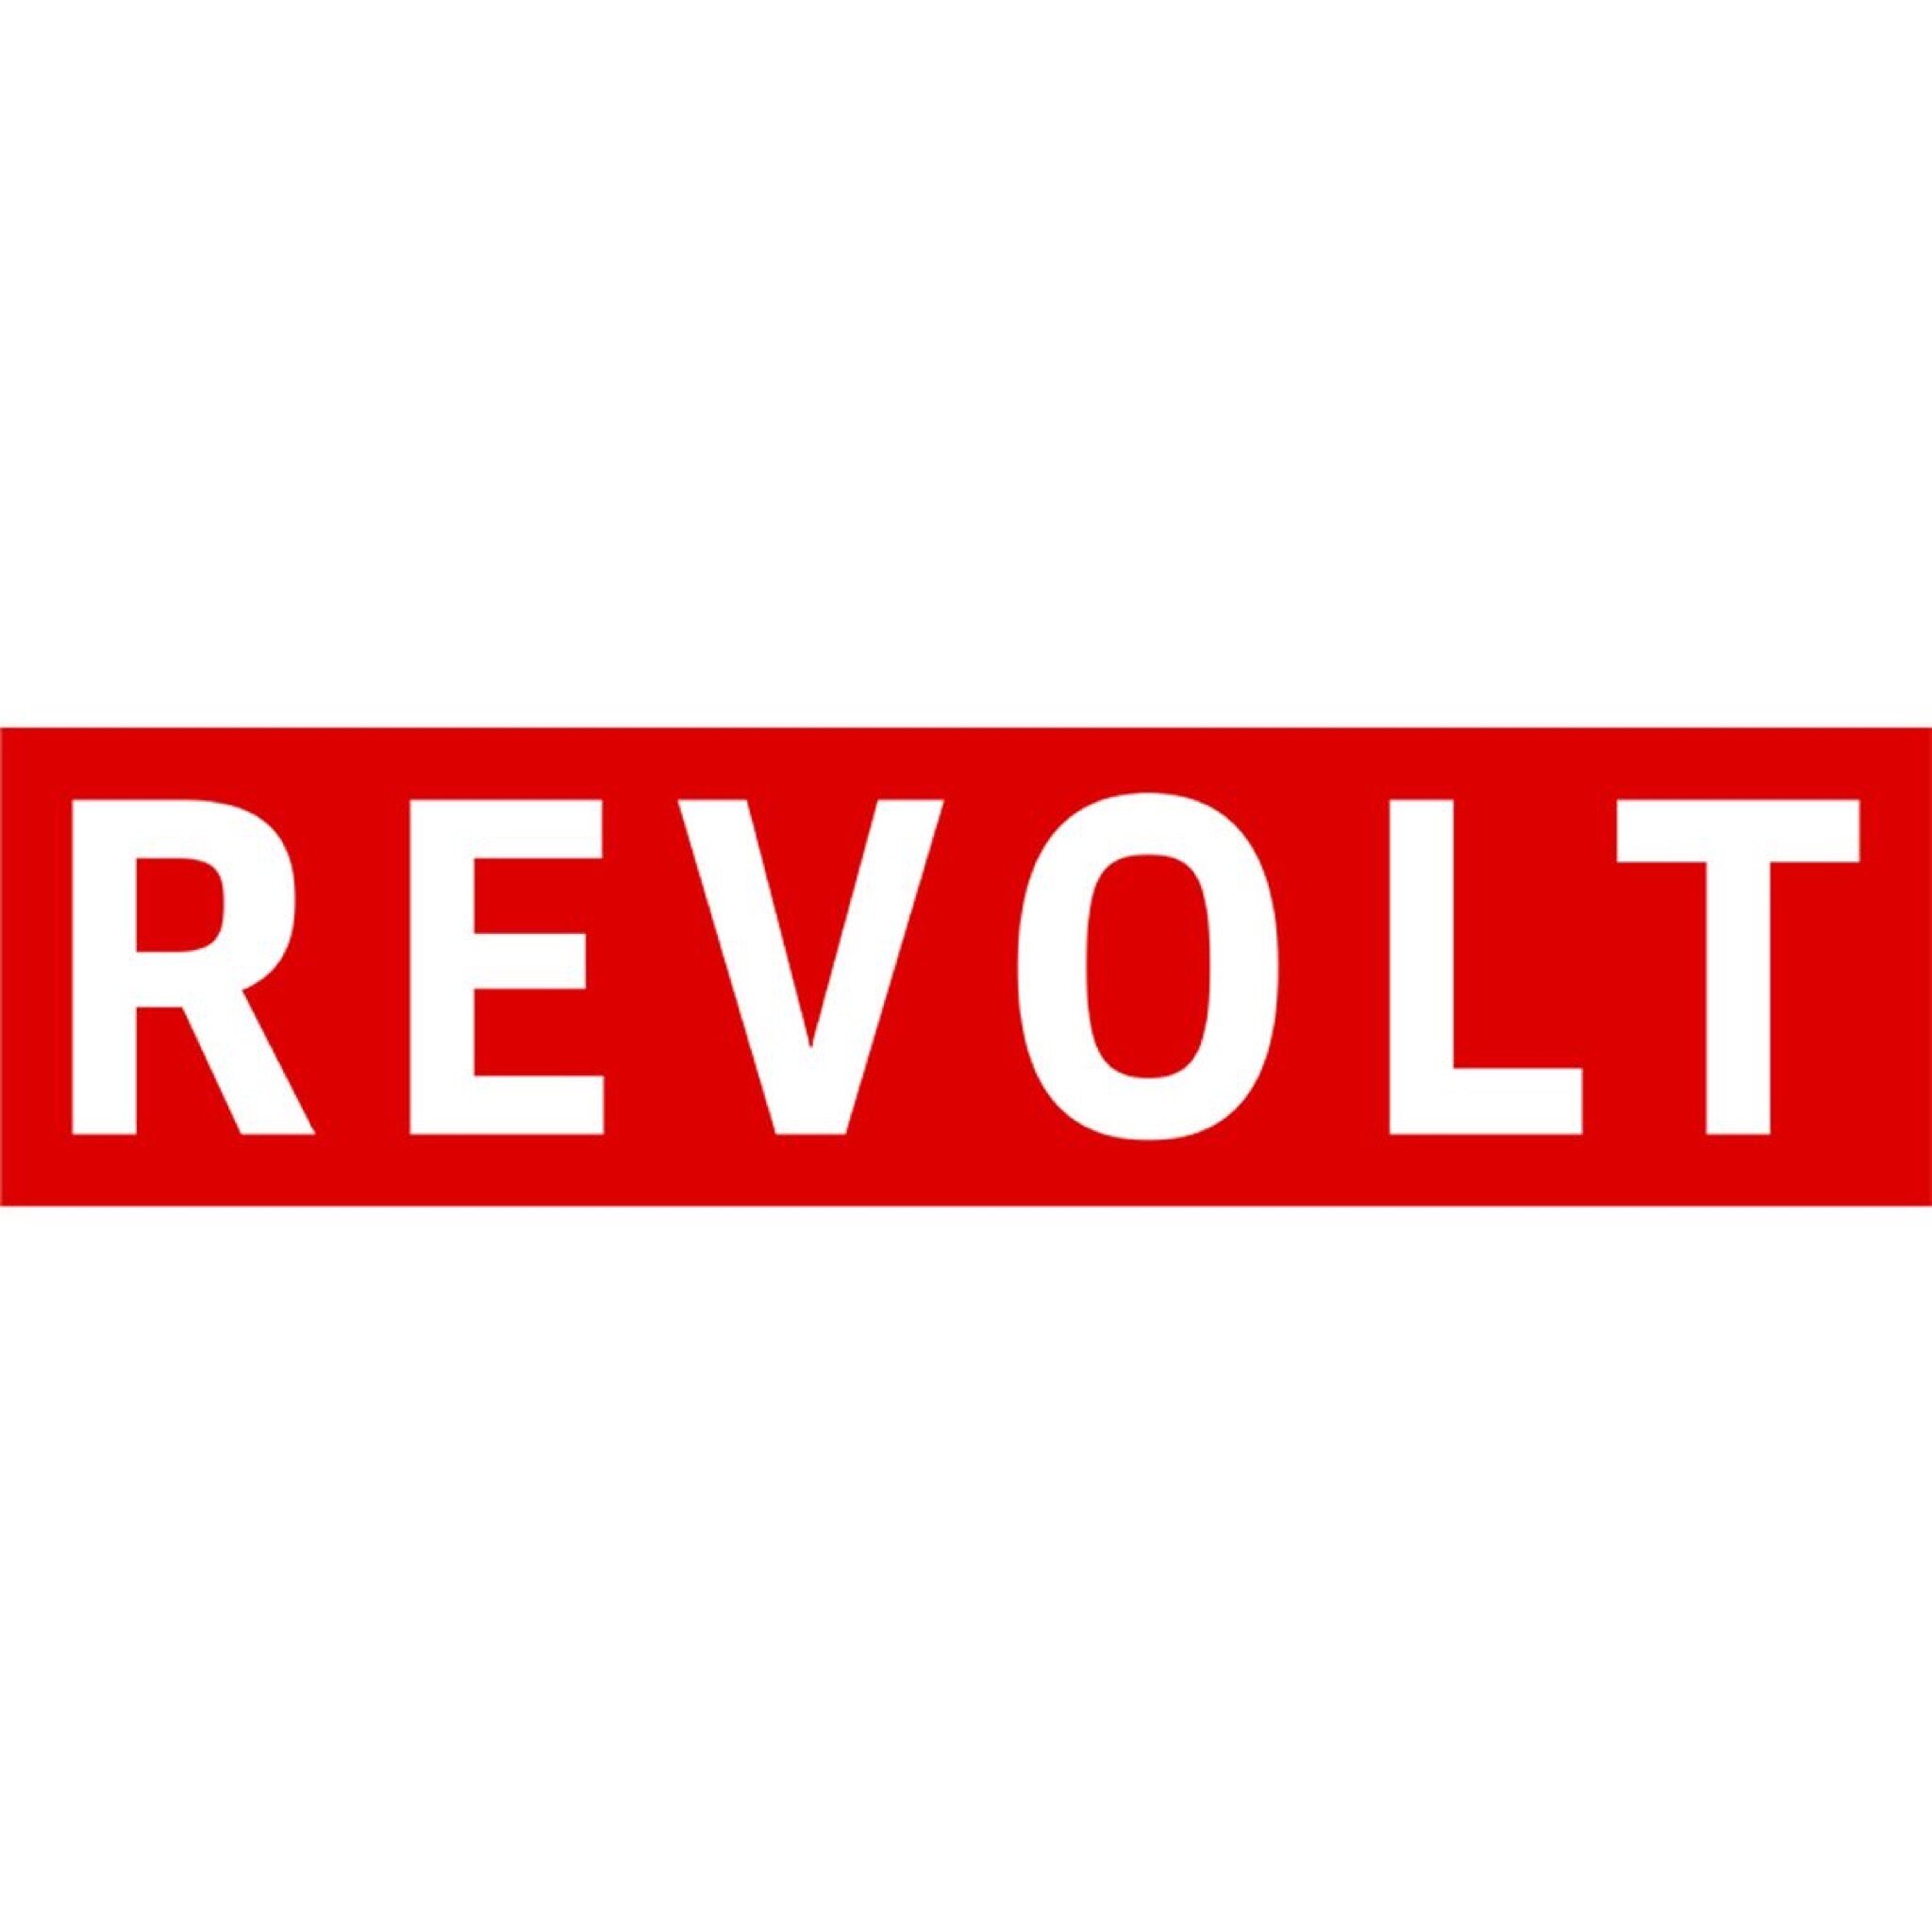 revolt.JPG